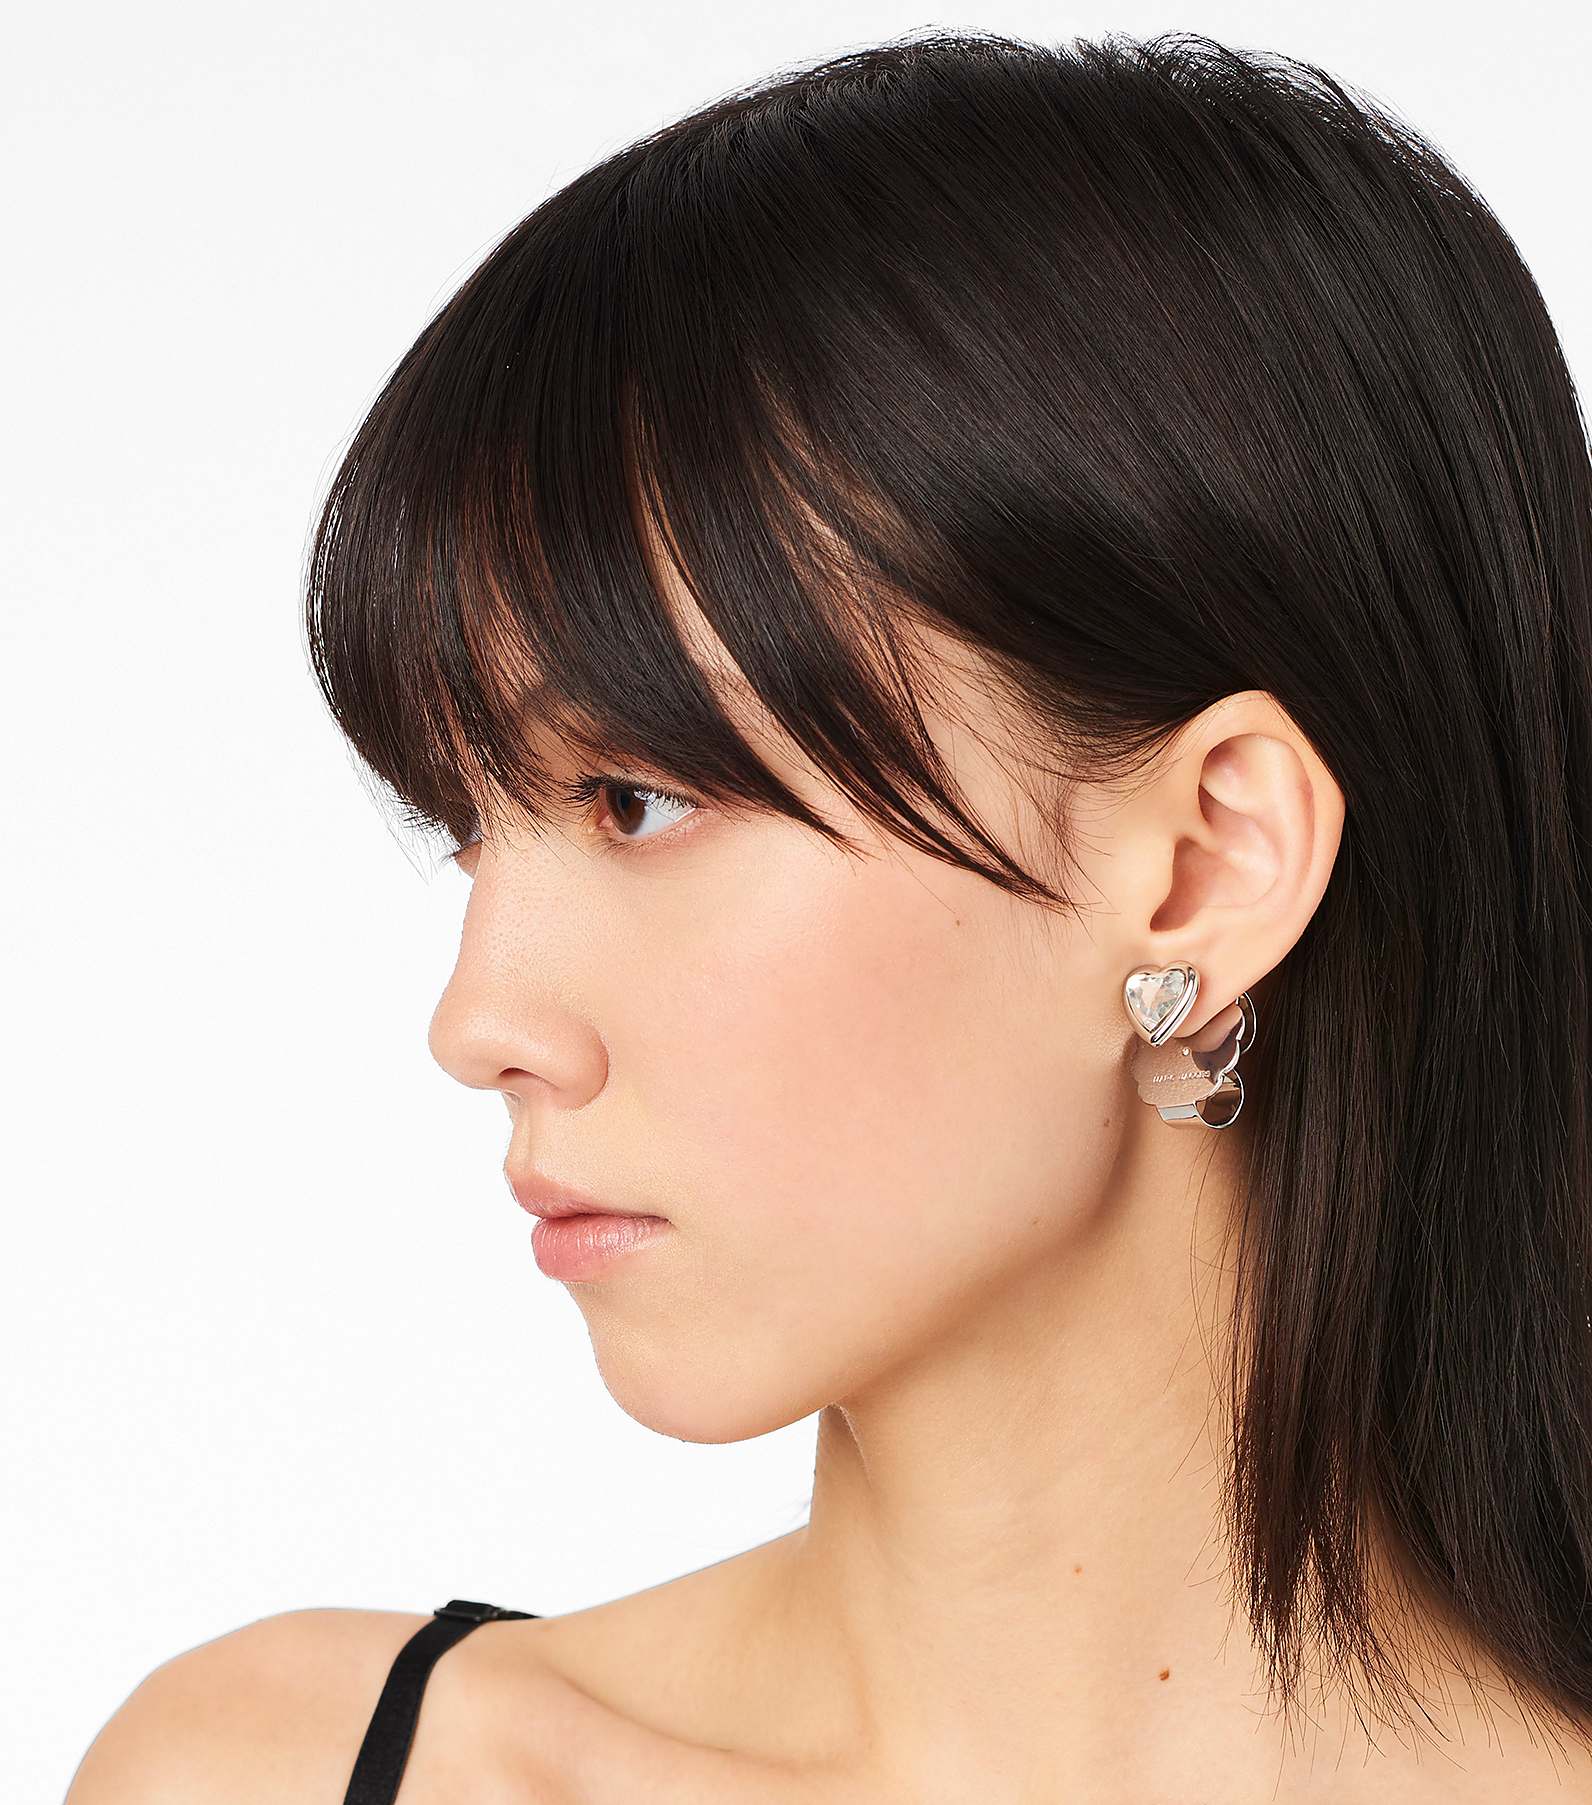 The Charmed Heart Stud Earrings(Earrings)